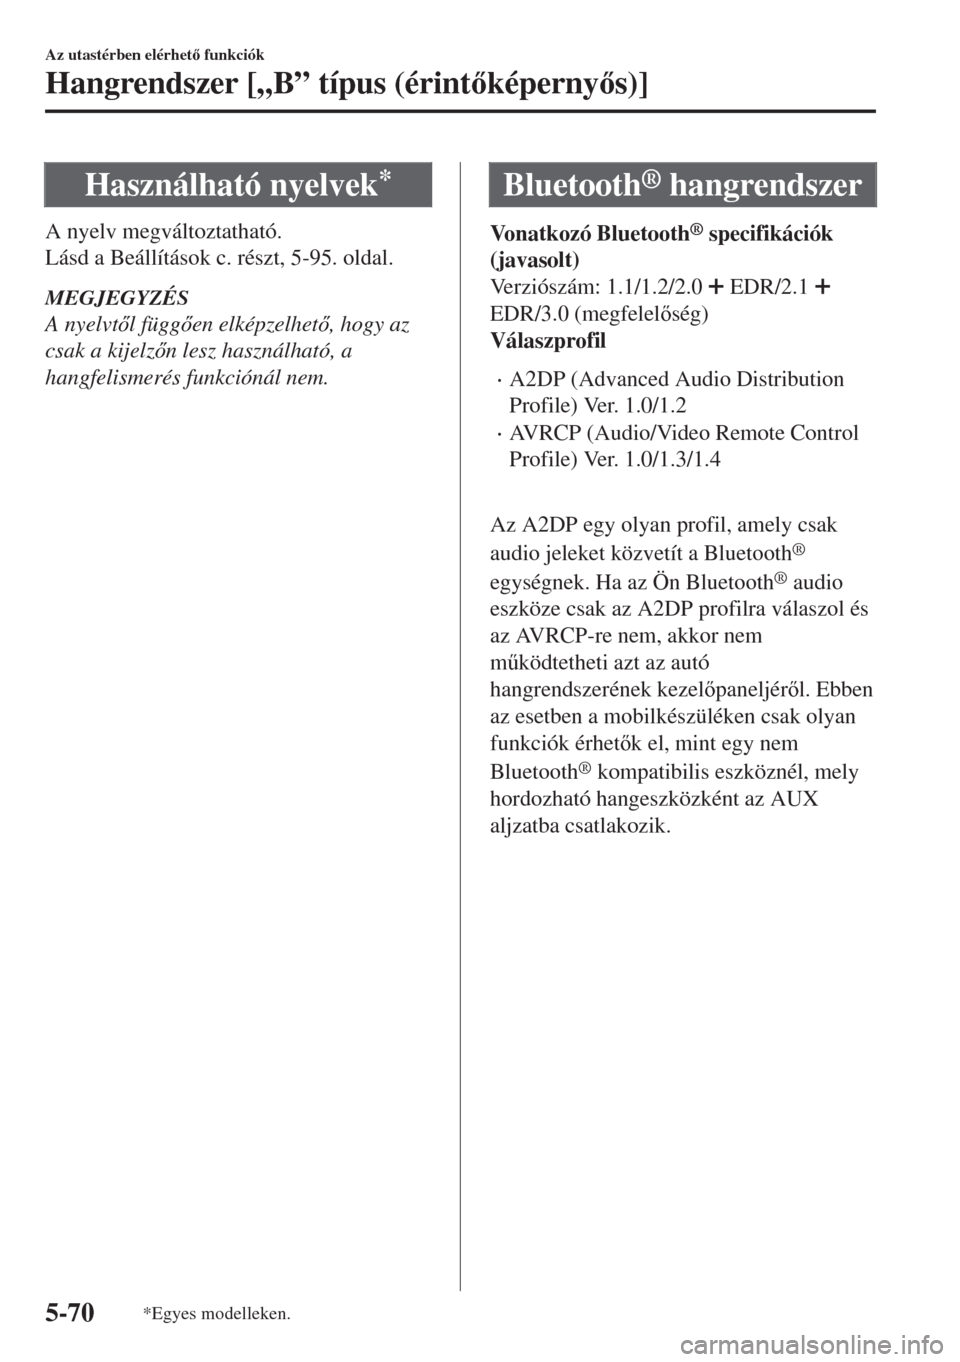 MAZDA MODEL MX-5 2018  Kezelési útmutató (in Hungarian) Használható nyelvek*
A nyelv megváltoztatható.
Lásd a Beállítások c. részt, 5-95. oldal.
MEGJEGYZÉS
A nyelvtl függen elképzelhet, hogy az
csak a kijelzn lesz használható, a
hangf